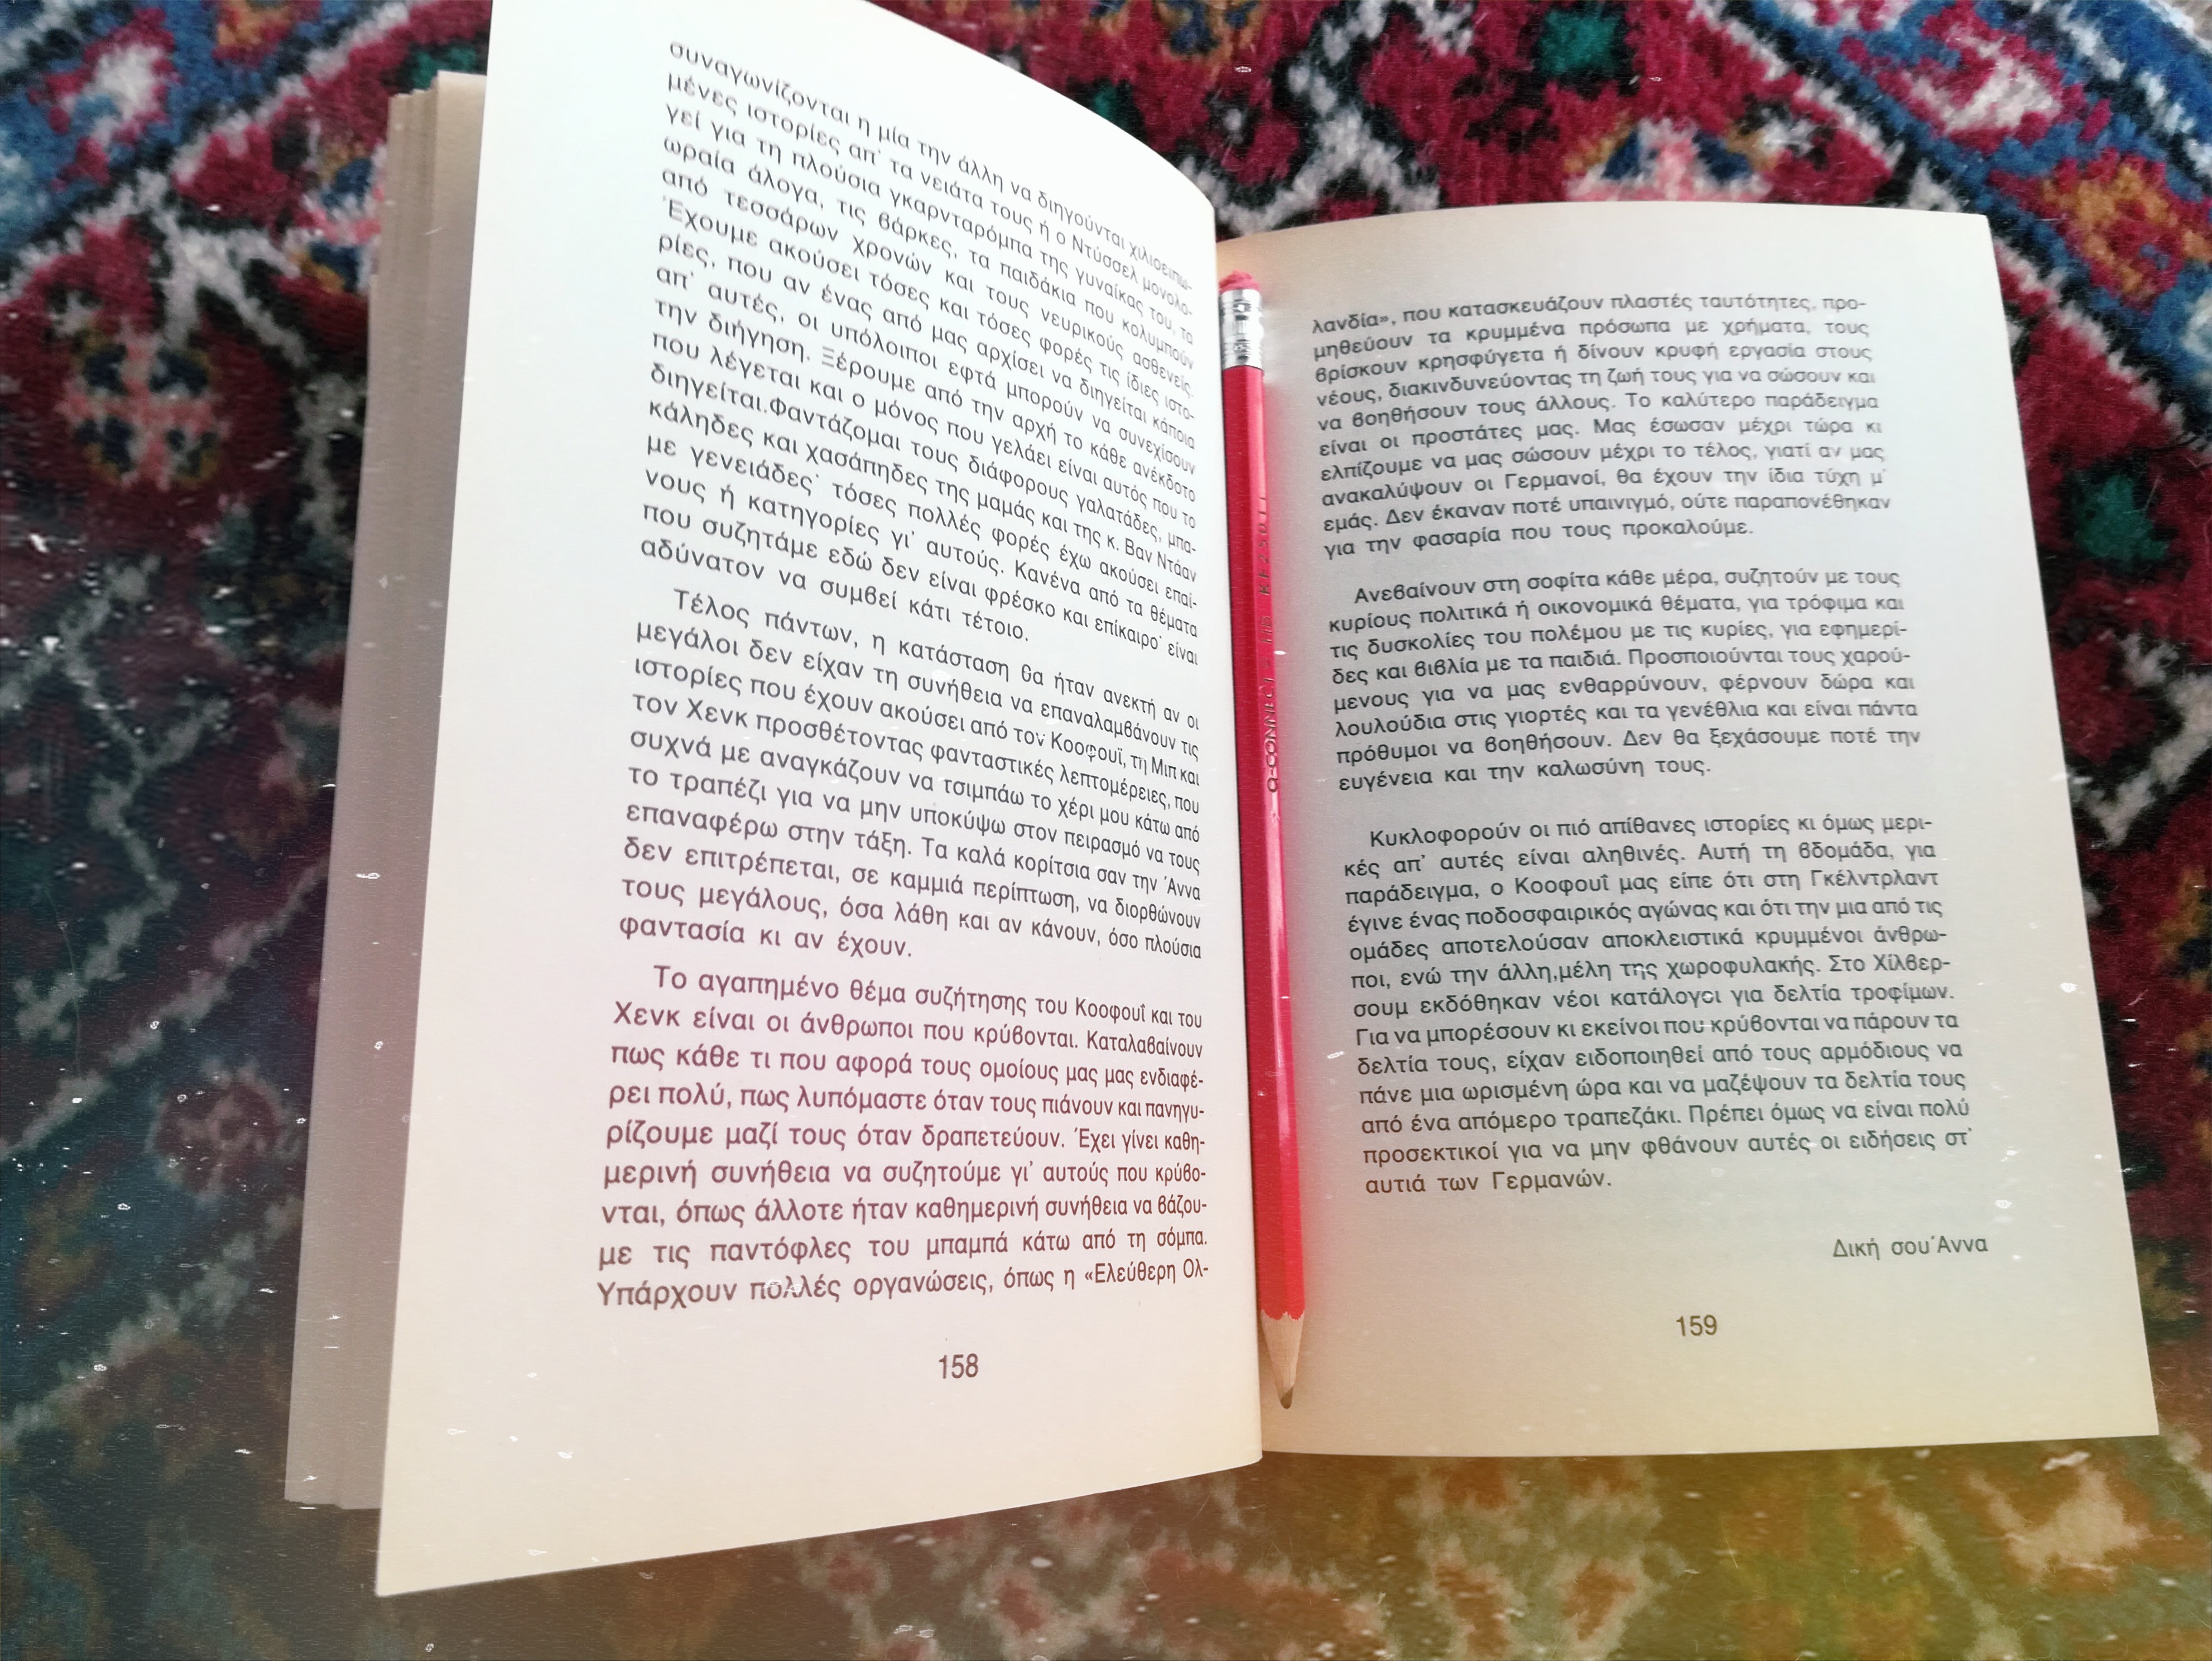 Το ημερολόγιο της Άννας Φρανκ (Het Achterhuis) ~ 1947. Η Άννα δε σταματά να διαβάζει, να μελετά και να ονειρεύεται ακόμα και κλεισμένη μέσα σε 4 τοίχους. Η Ιστορία της Άννας Φρανκ - Το ημερολόγιο | Ελίζα Σουφλή